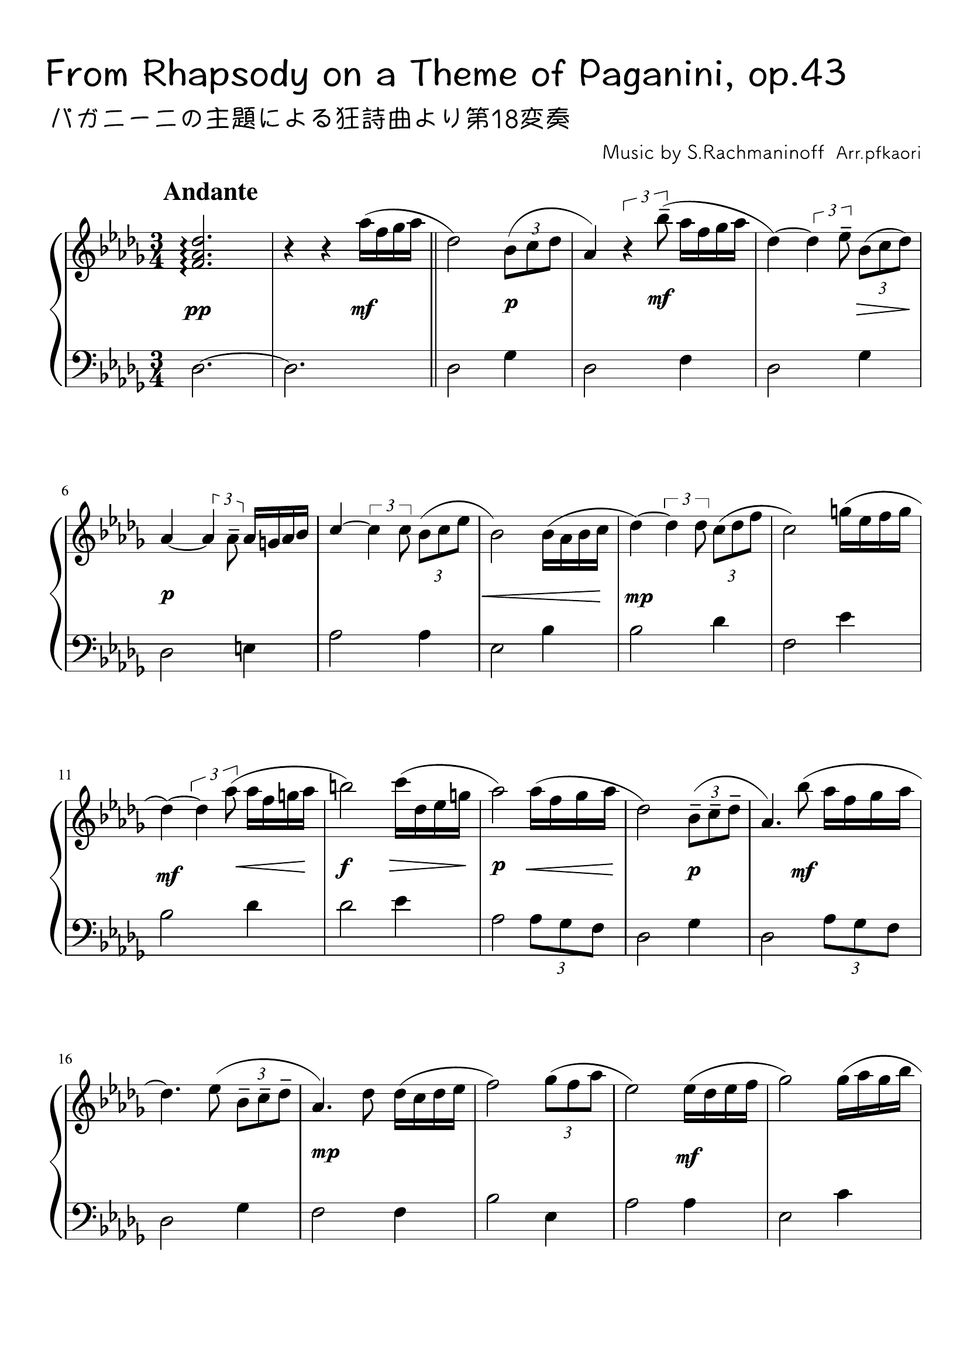 パガニーニの主題による変奏曲 楽譜 - 楽器/器材